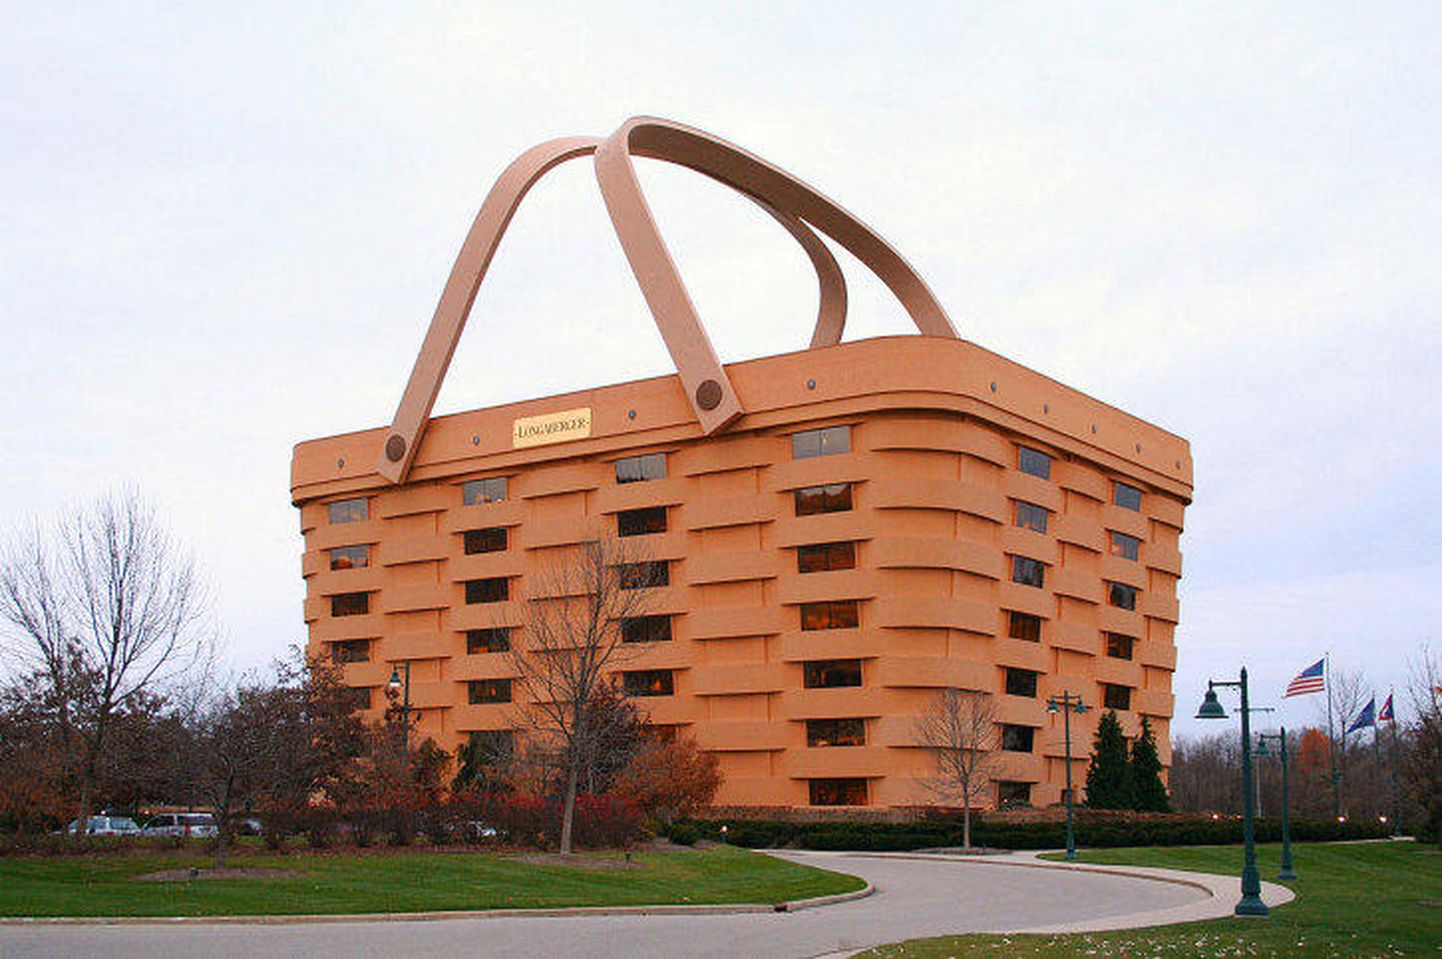 Korvikujuline hoone Newarkis Ohio osariigis